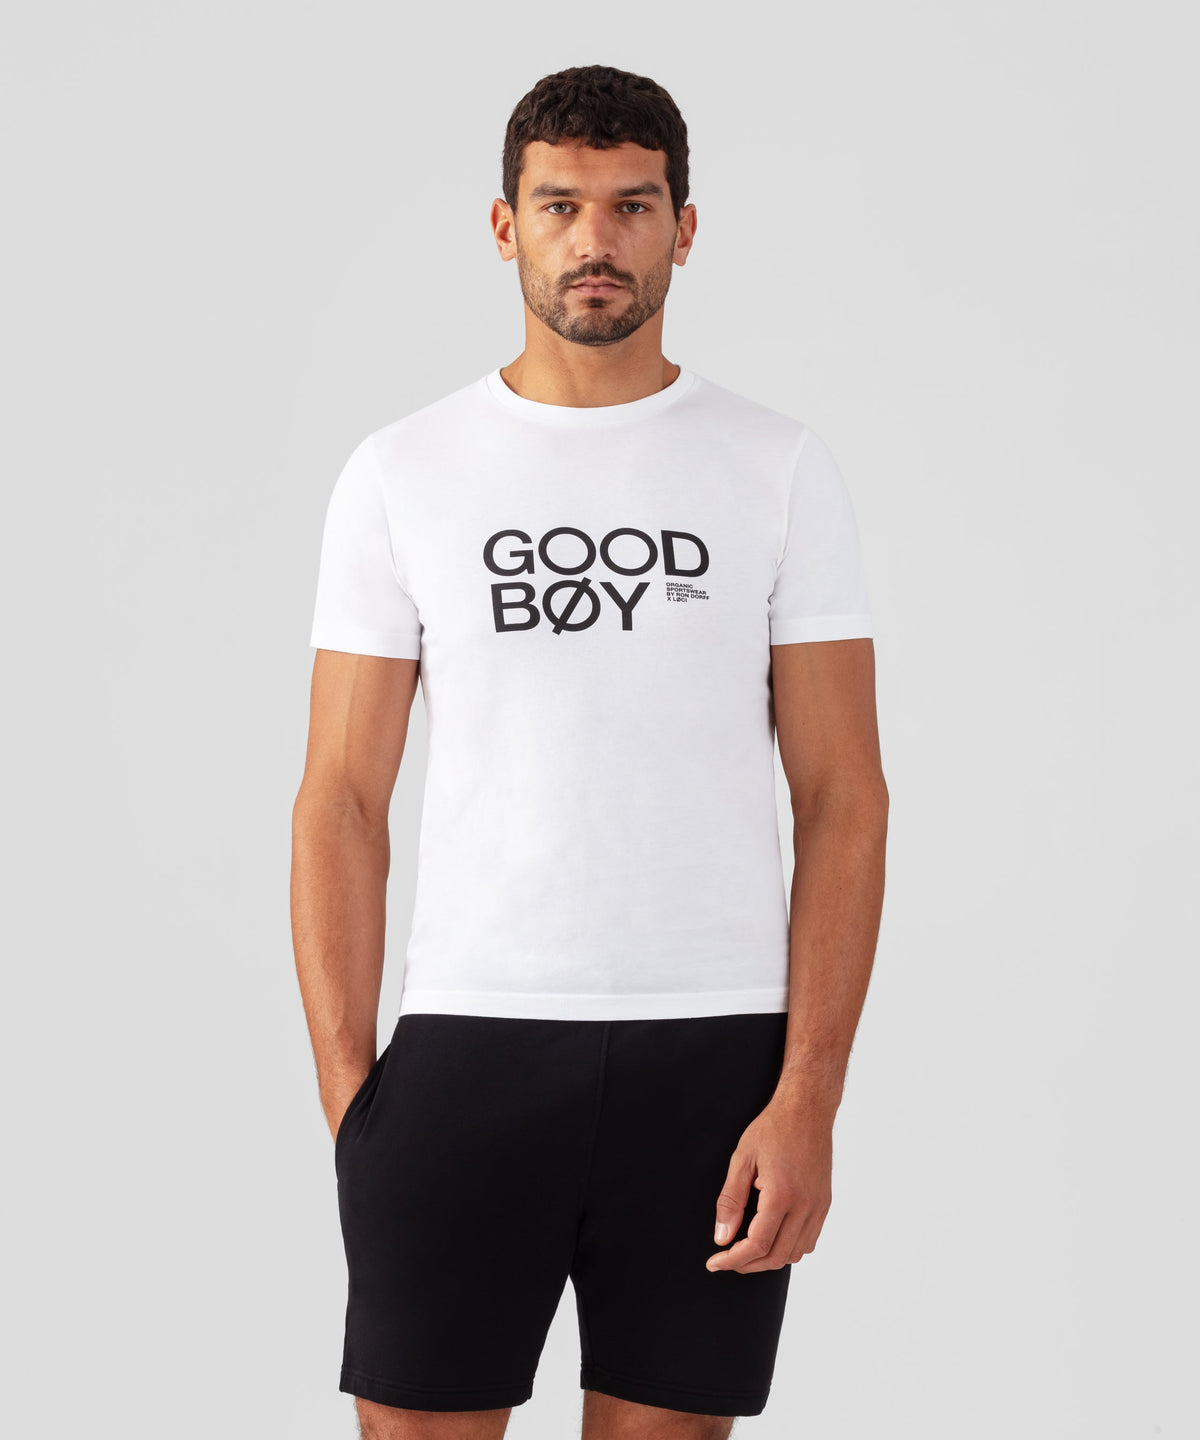 RON DORFF x LØCI Organic Cotton T-Shirt GOOD BØY: White